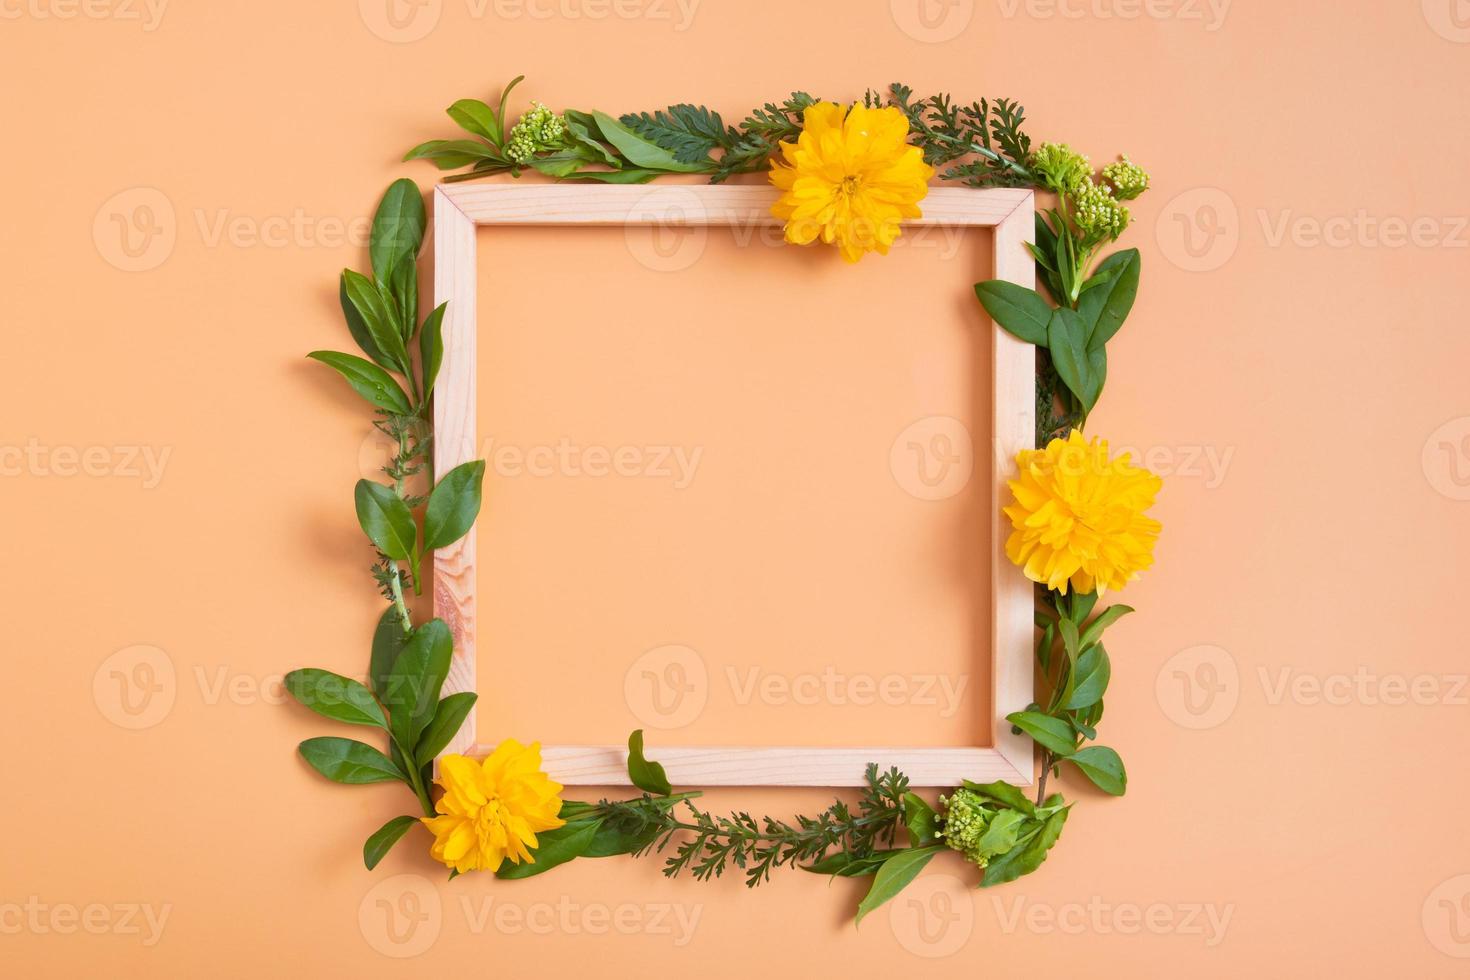 composition estivale ou printanière sur fond orange. fleurs et feuilles avec cadre en bois carré copie espace vue de dessus. été, concept floral de printemps photo